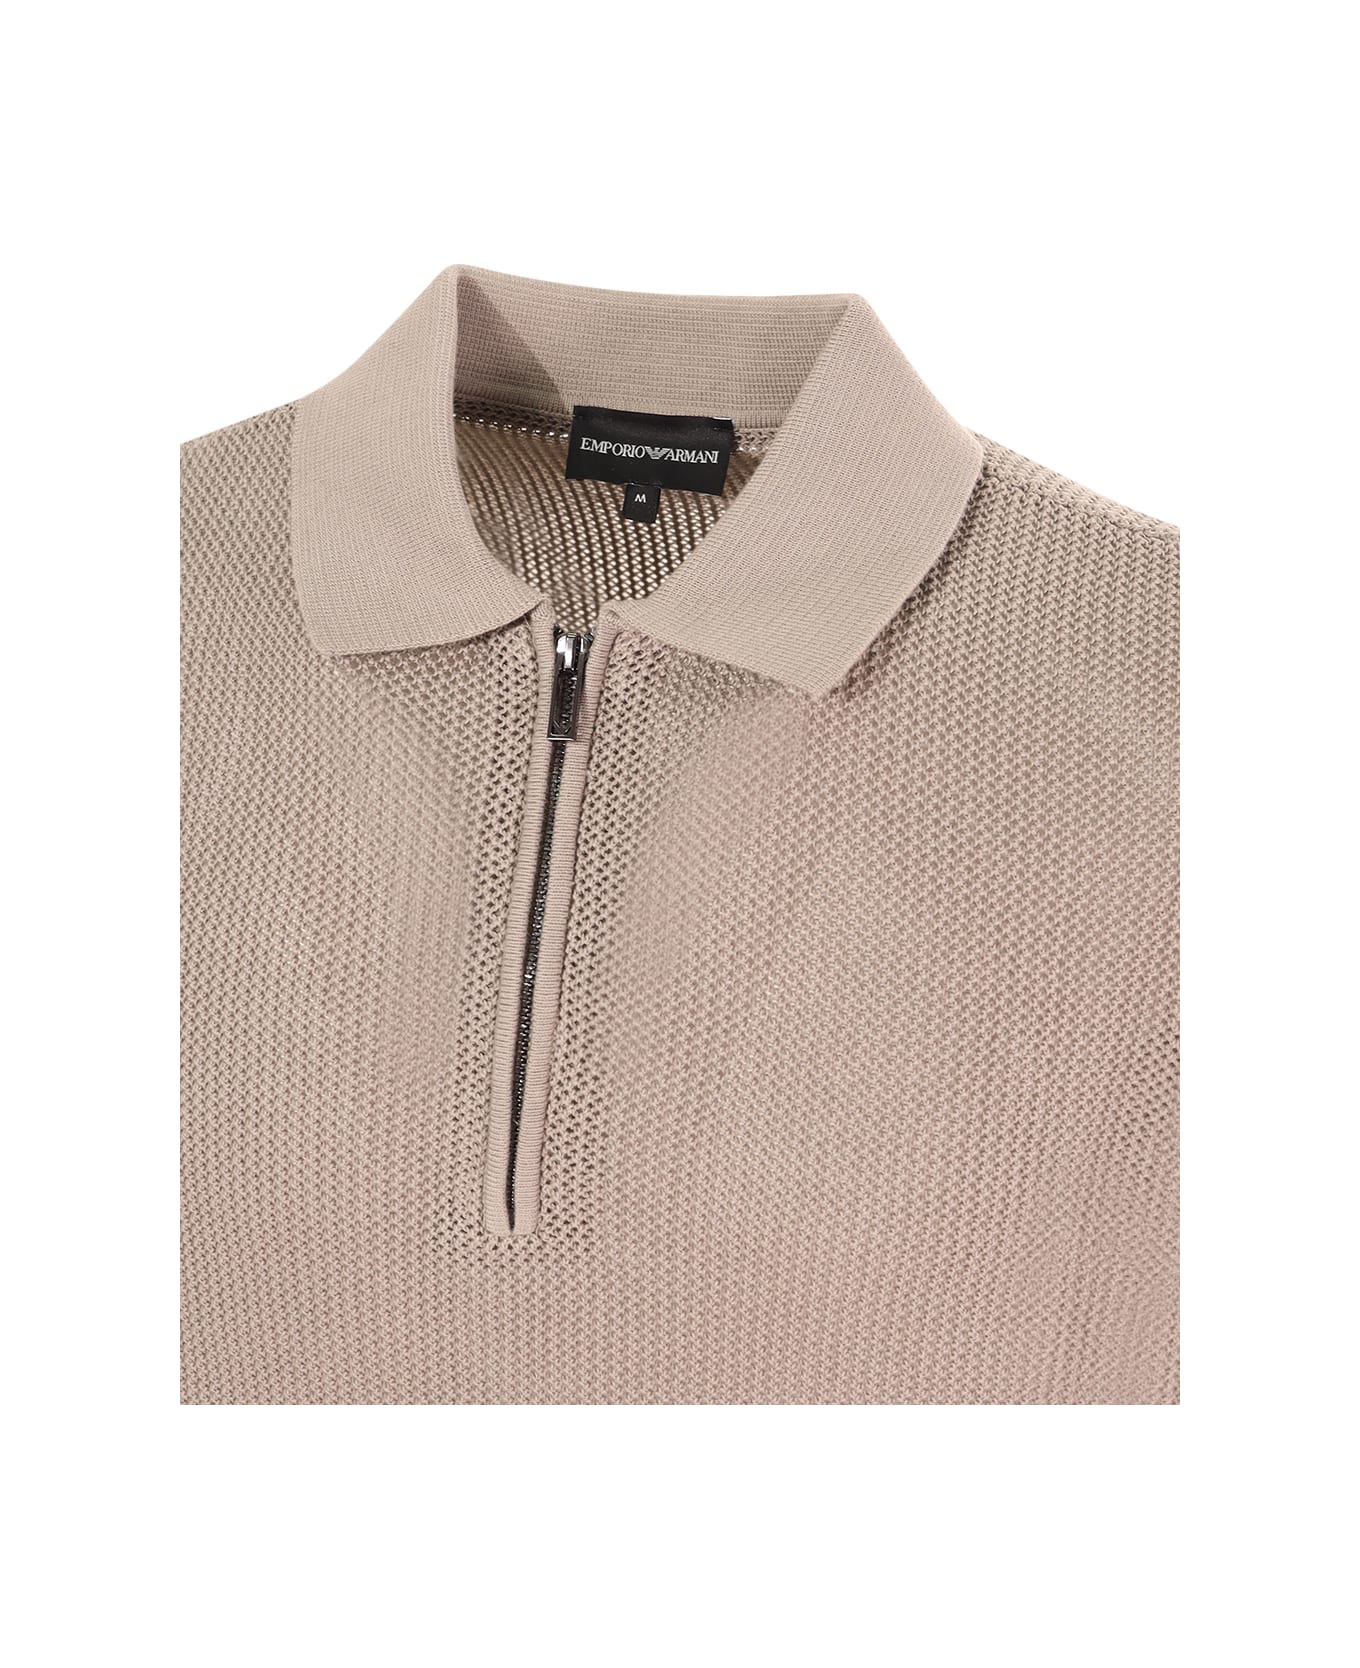 Emporio Armani Polo Neck Sweater - Beige ポロシャツ